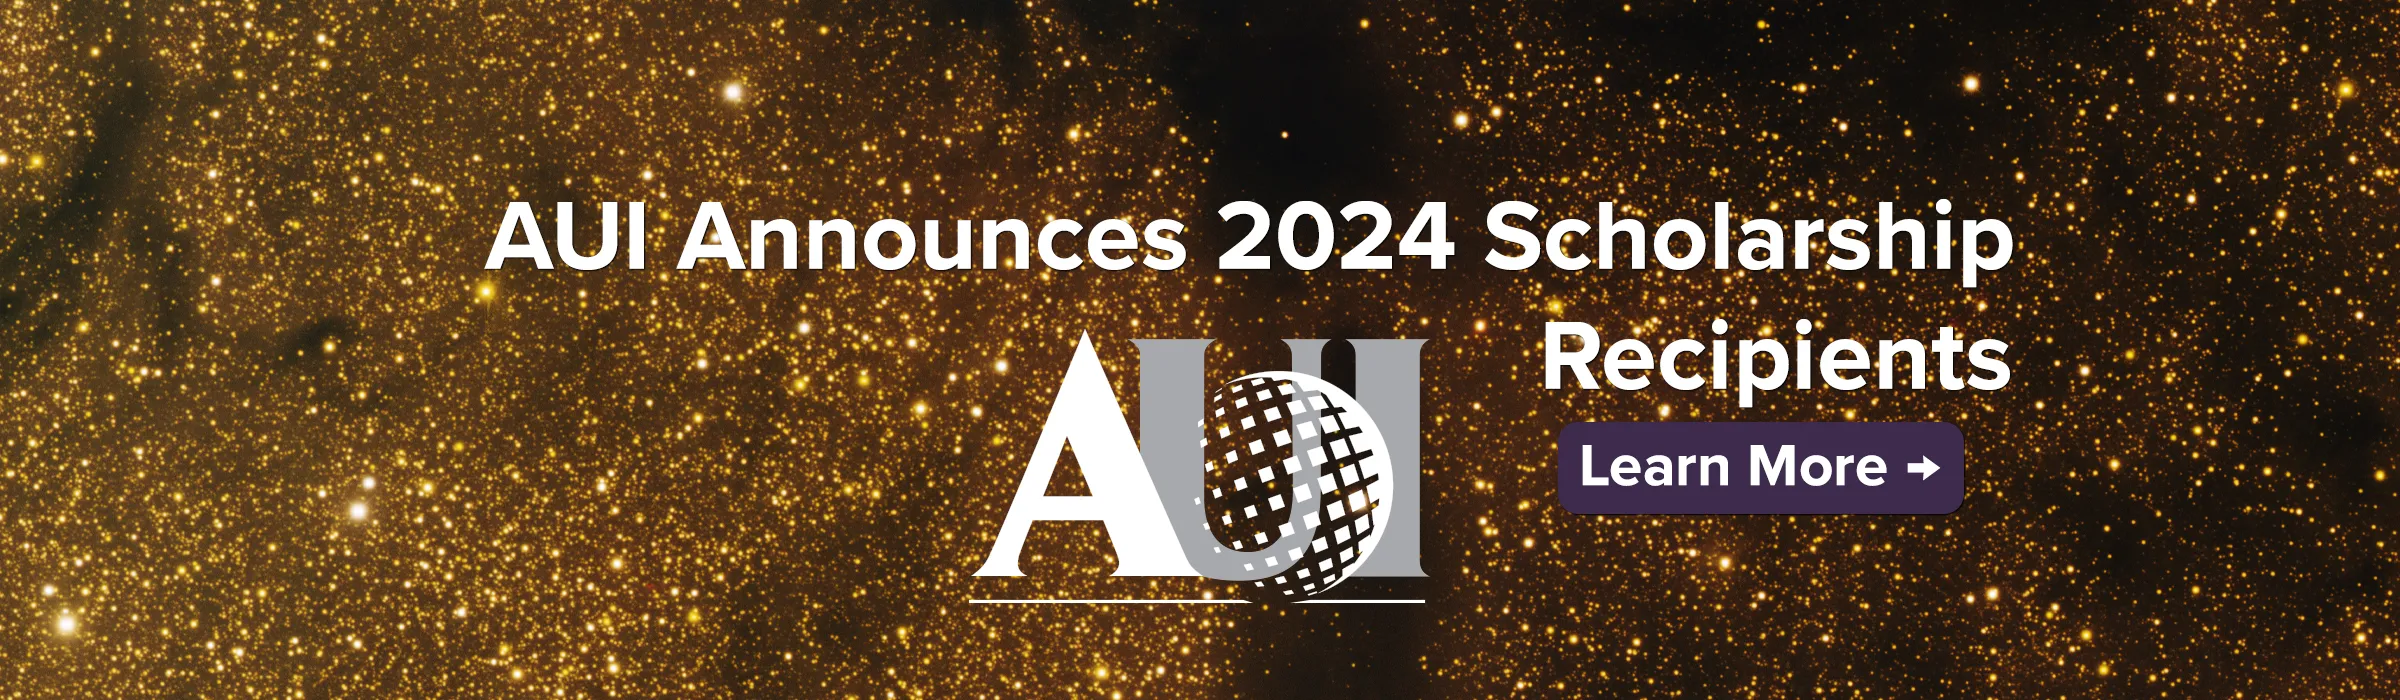 AUI Announces 2024 Scholarship Recipients